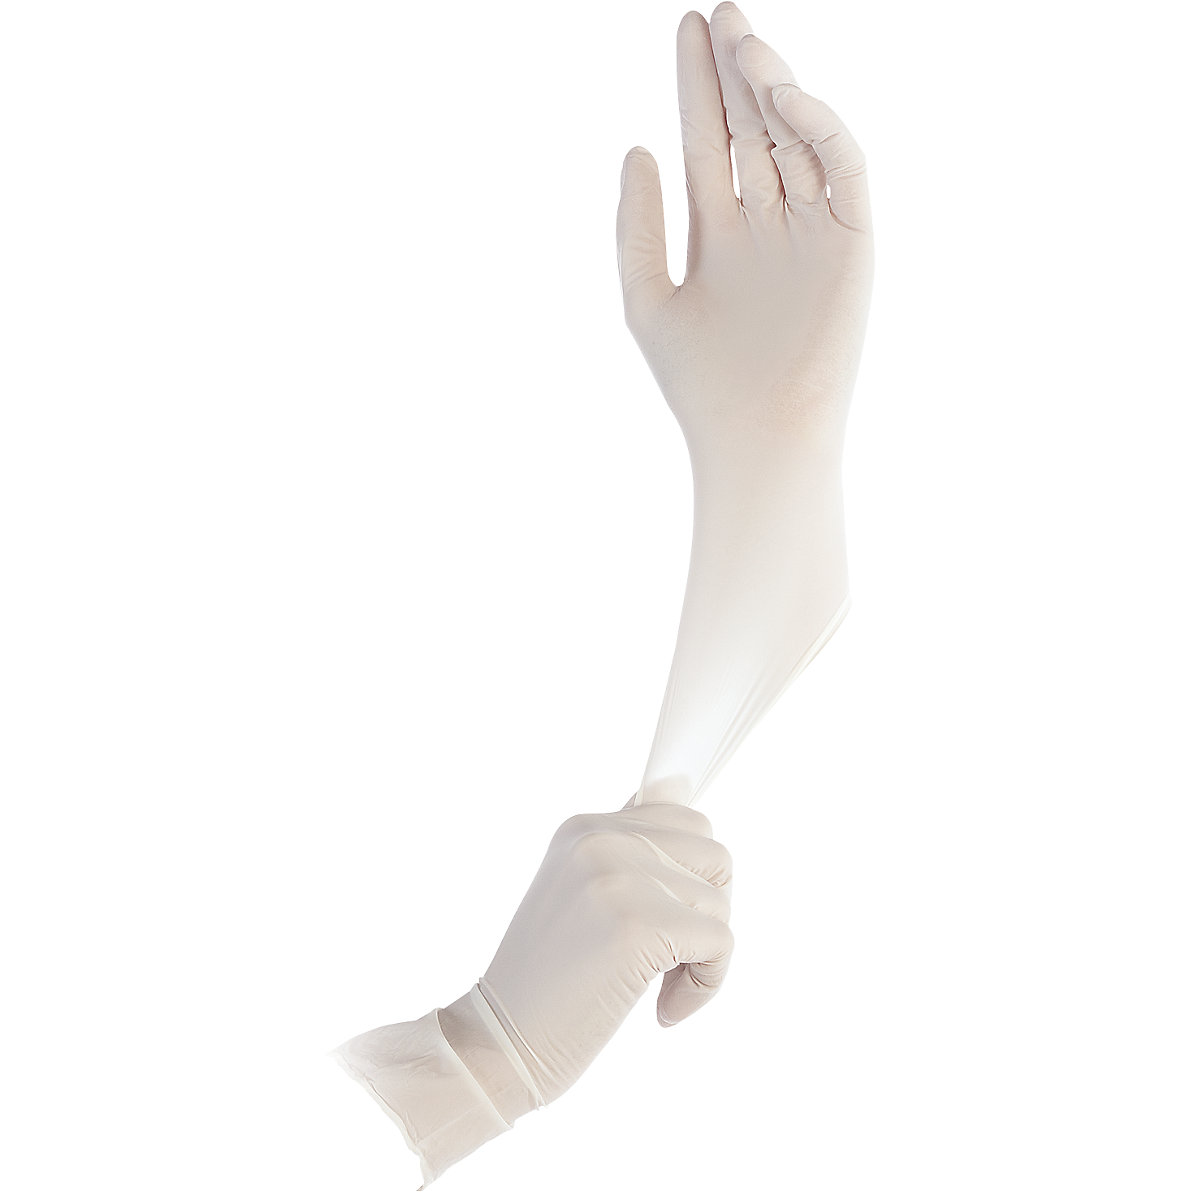 Nitrilne rokavice za enkratno uporabo SAFE LIGHT